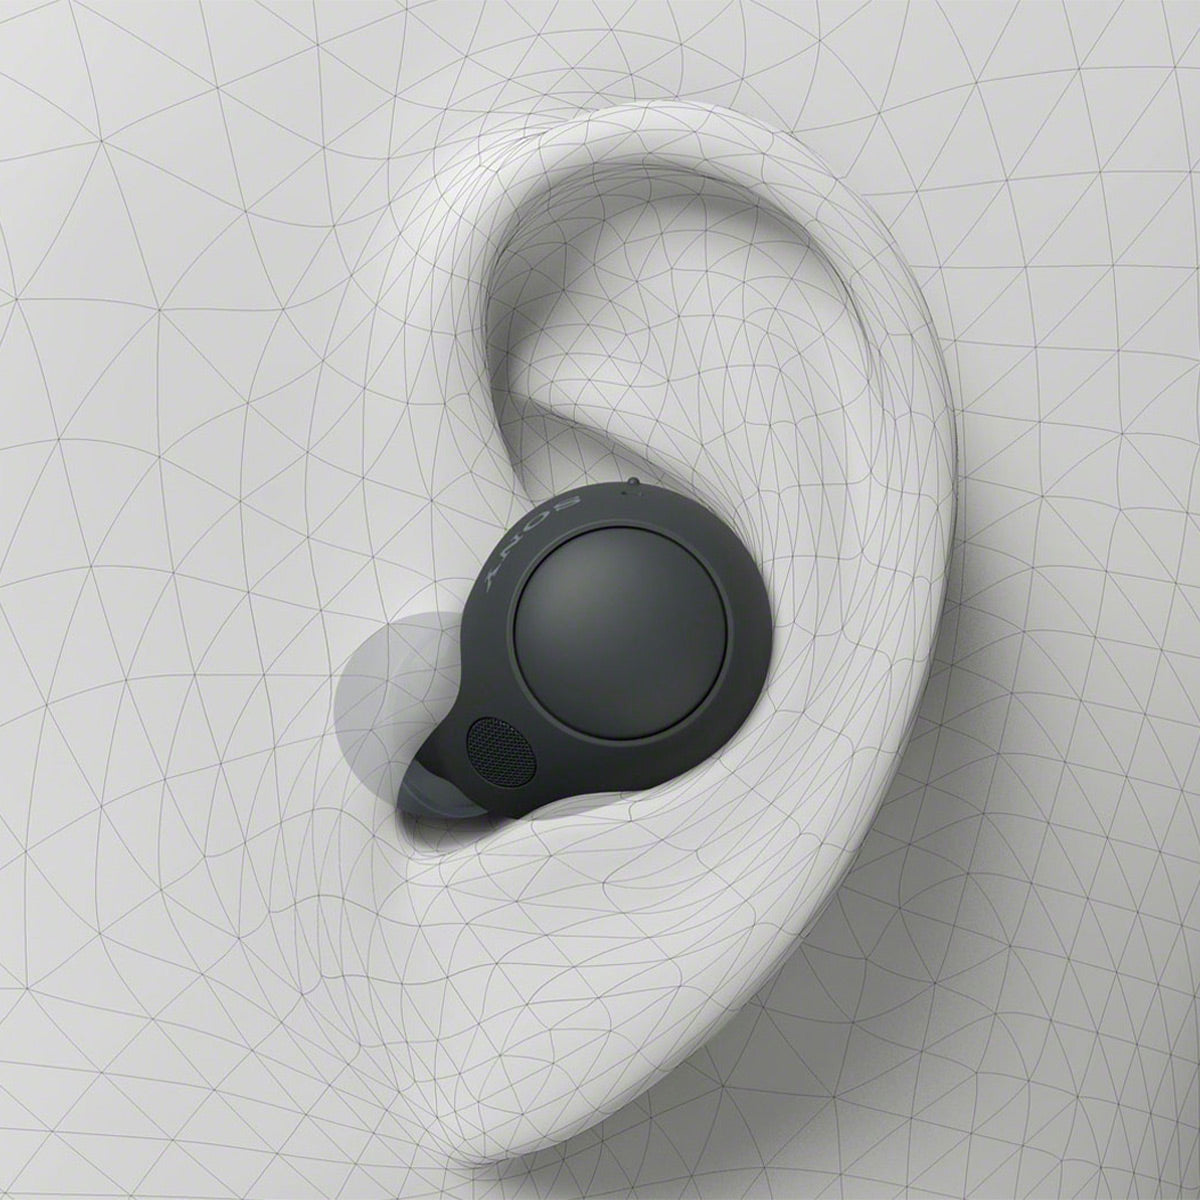 Sony Wf-c700n True Wireless Bluetooth Noise Canceling In-ear Headphones :  Target